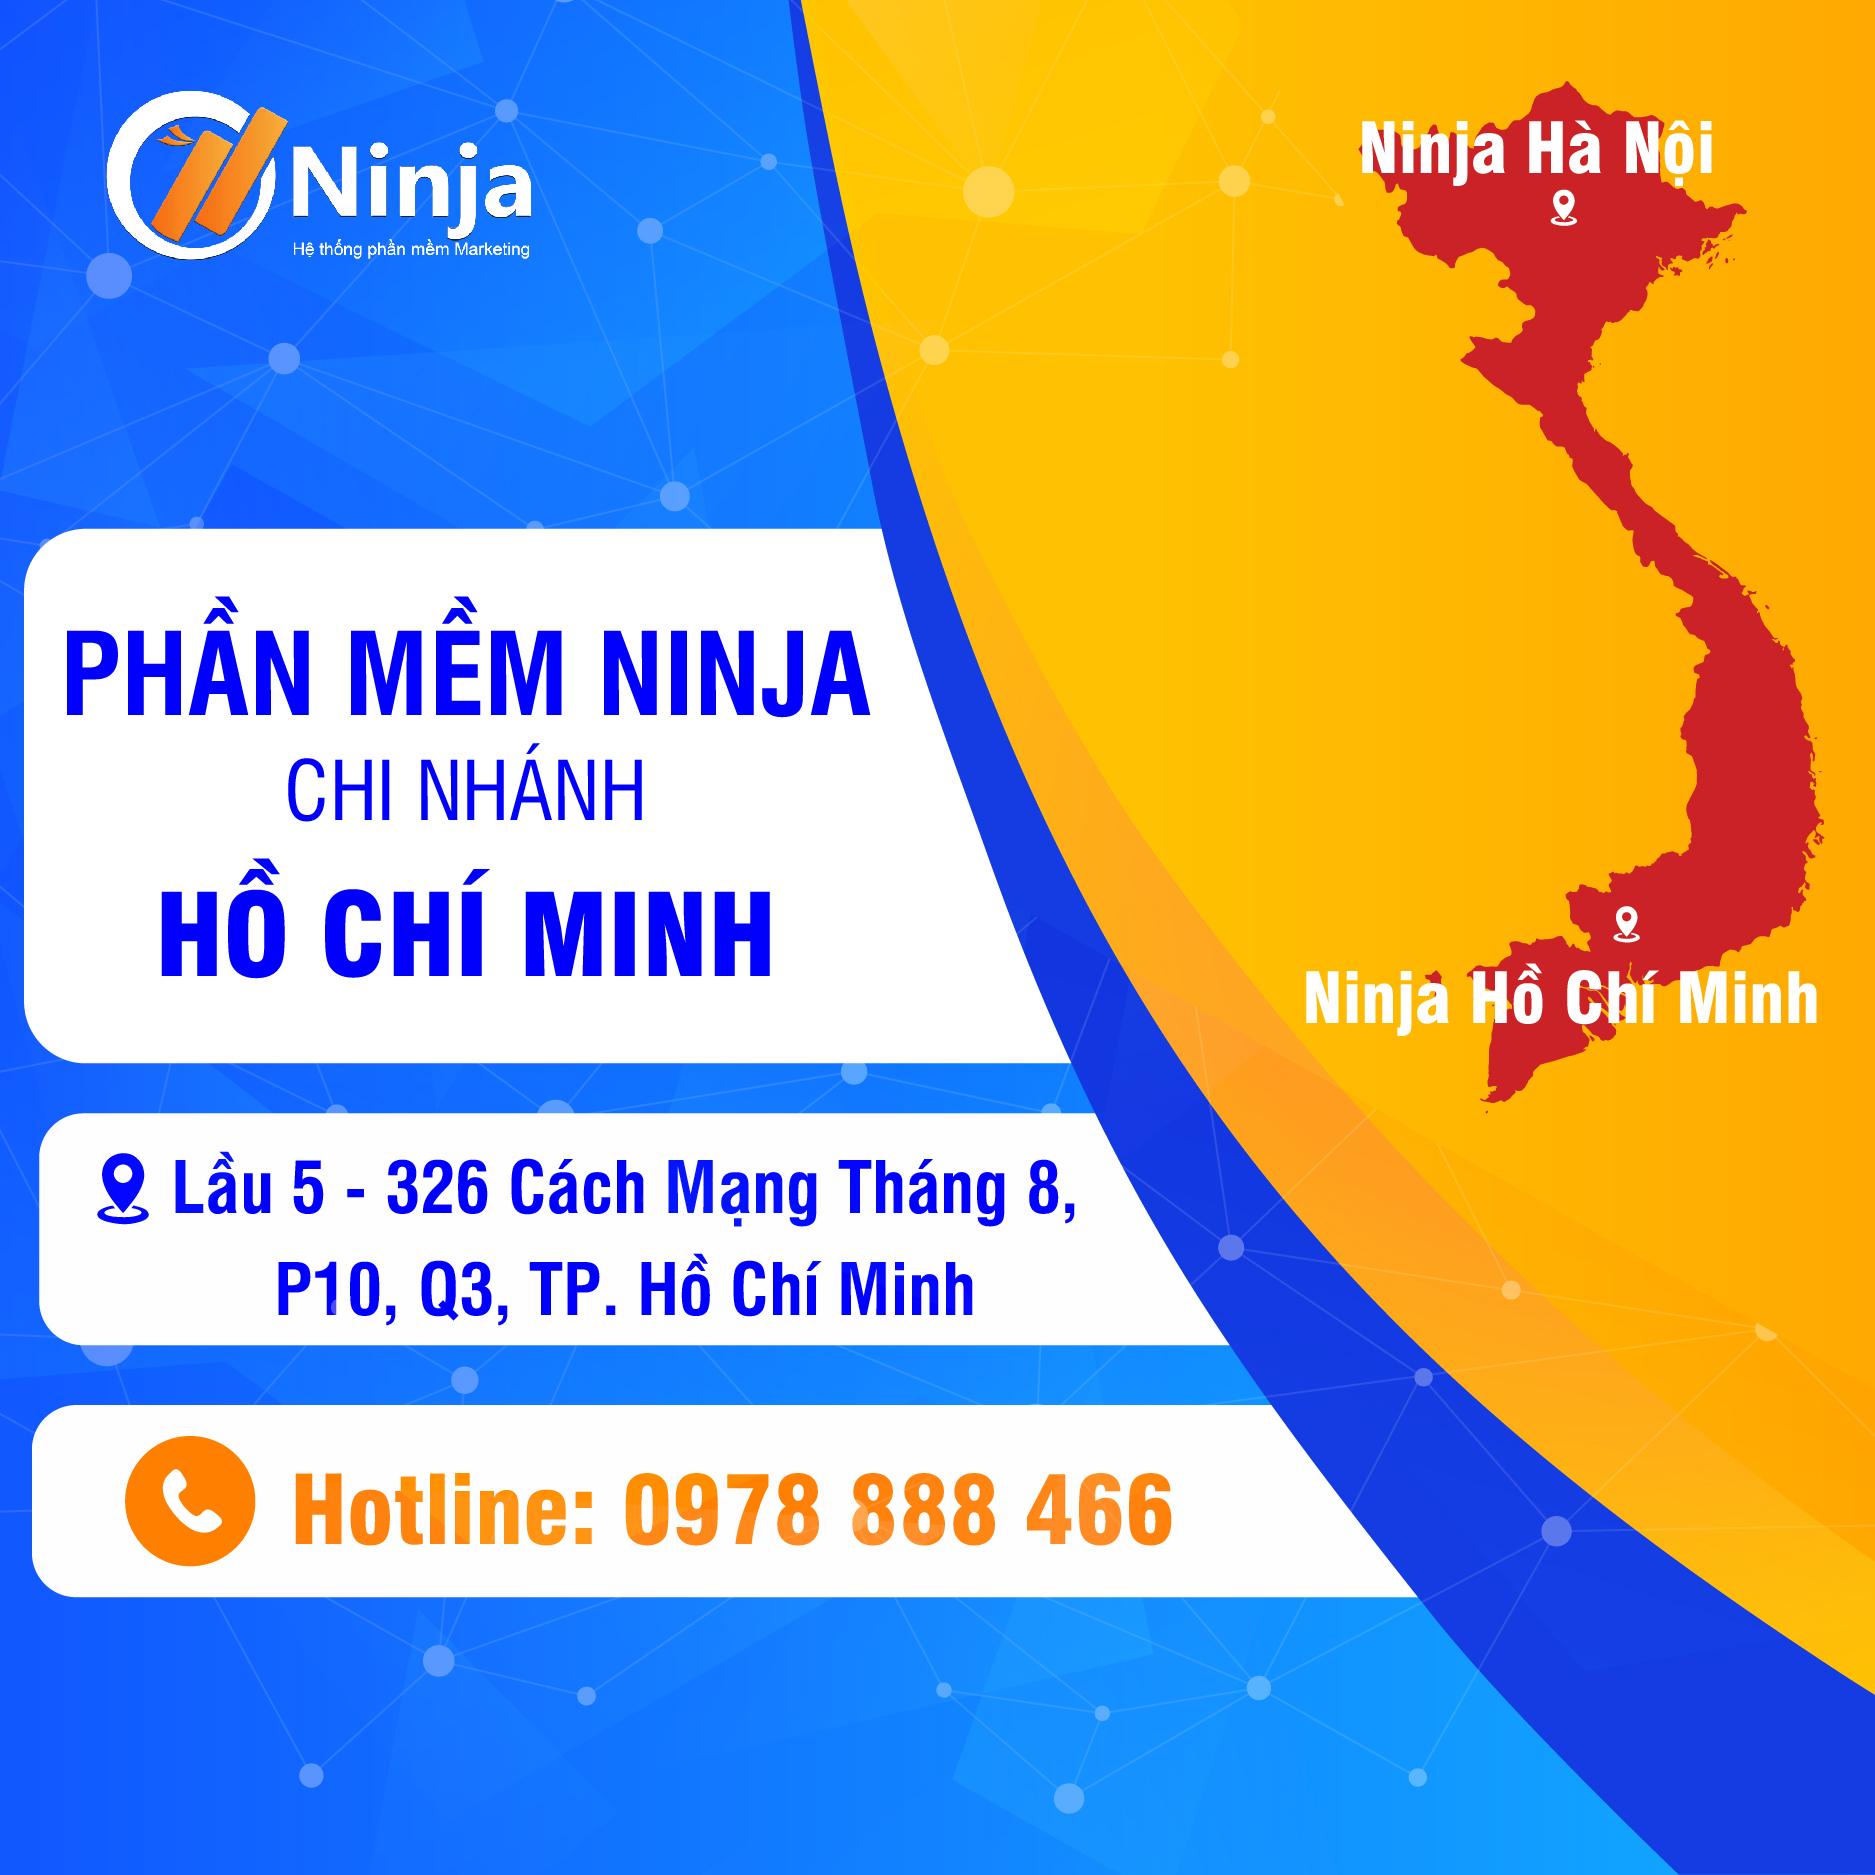 Ninja Ho chi minh Phần mềm Ninja: Văn phòng mới tại TP.Hồ Chí Minh chính thức đi vào hoạt động